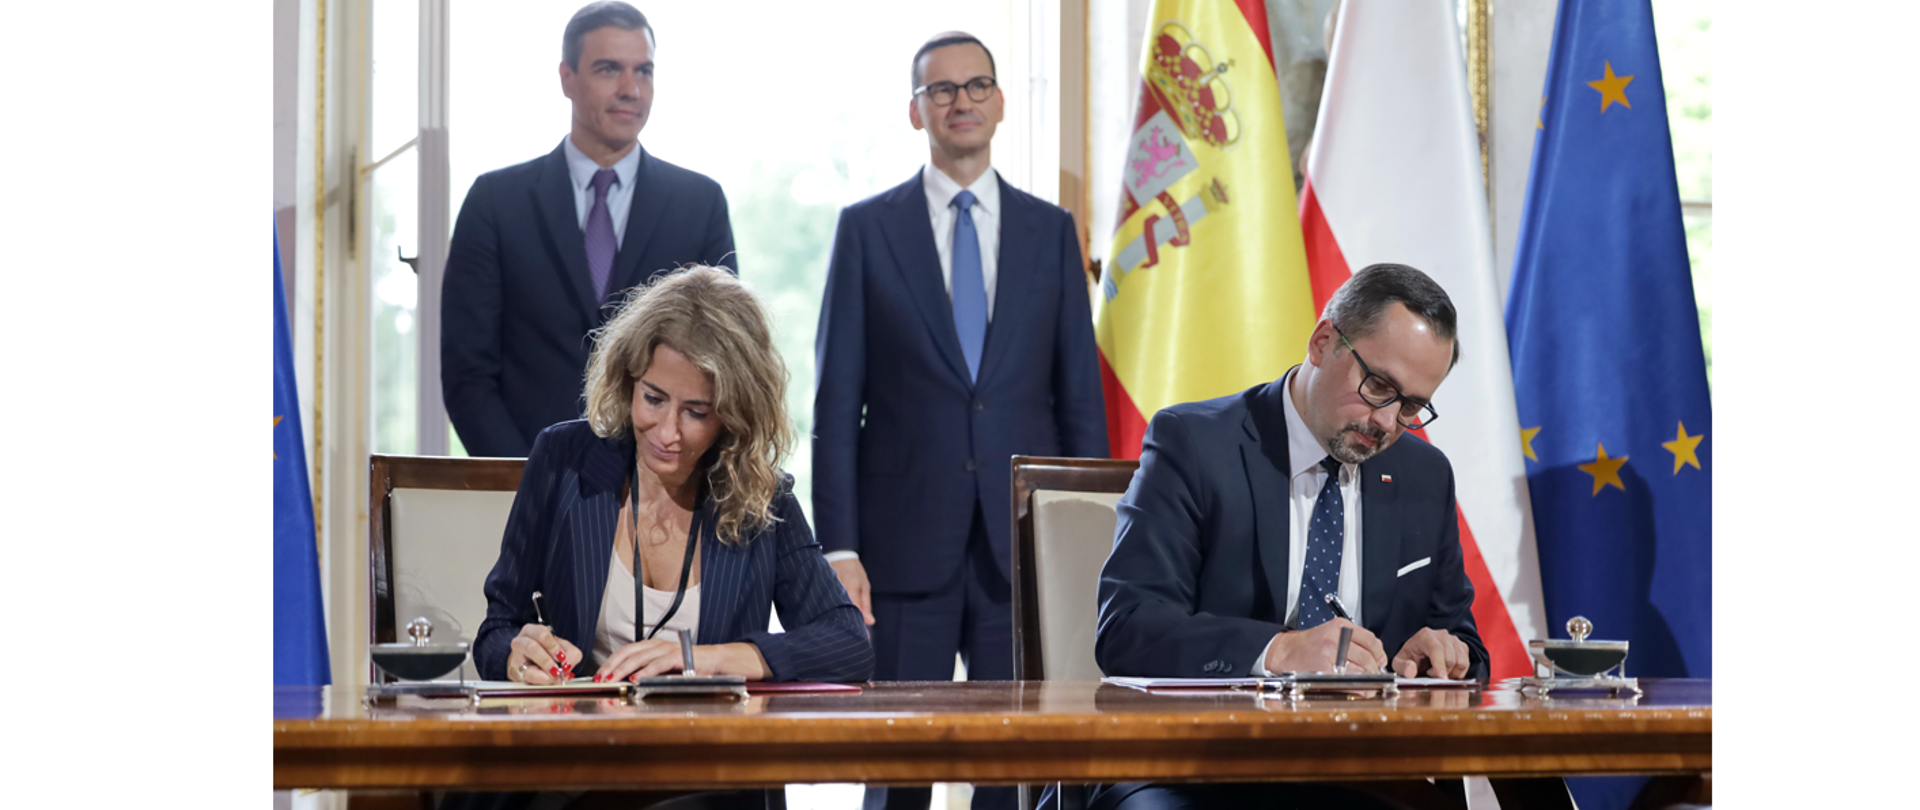 Marcin Horała i Raquel Sánchez Jiménez podpisuja przy stole dokumenty. Za nimi stoją premierzy Mateusza Morawieckiego i Pedro Sancheza.